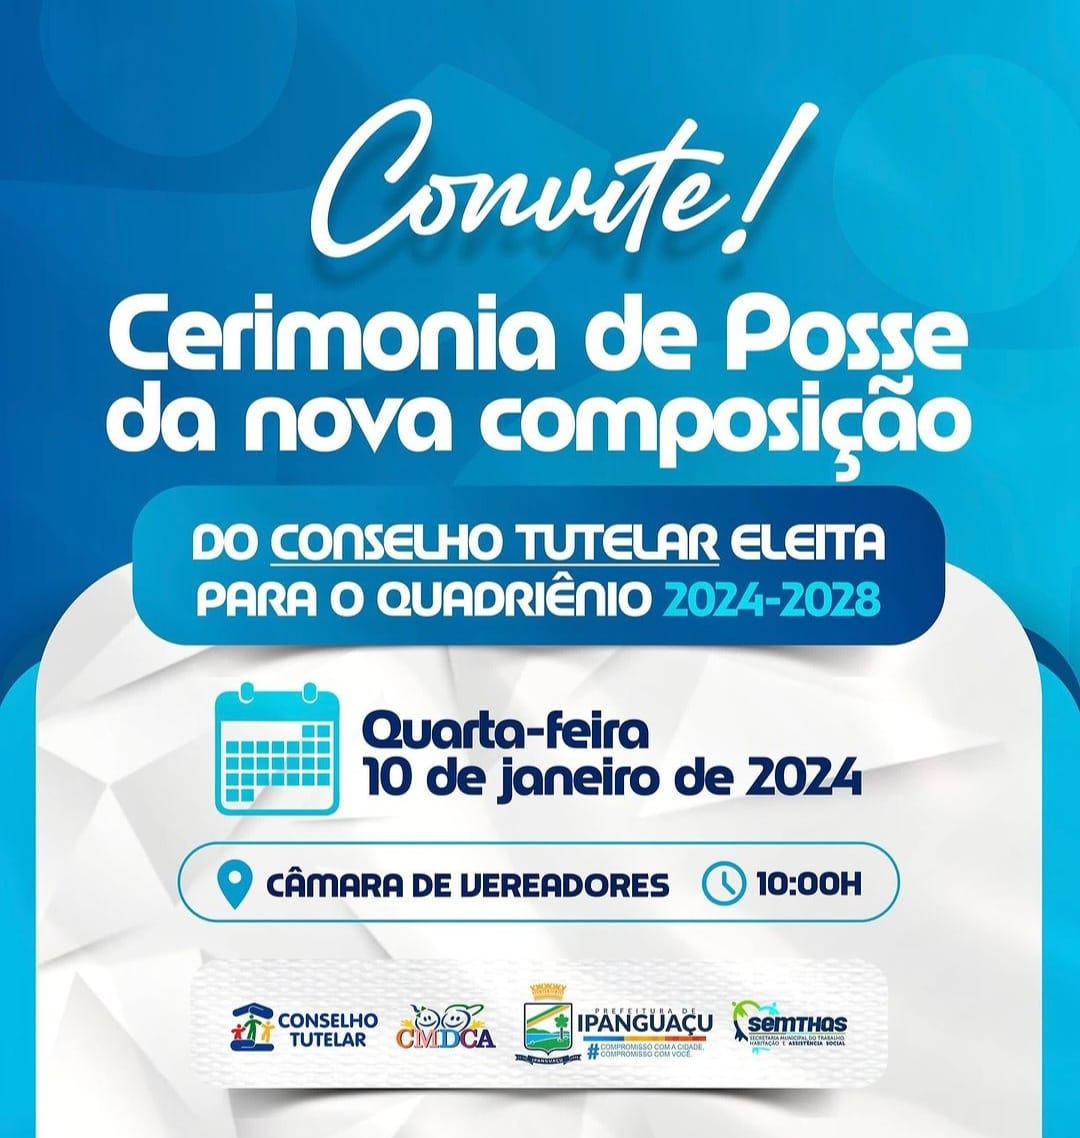 Convite para Cerimônia de Posse dos novos Conselheiros Tutelares de Ipanguaçu